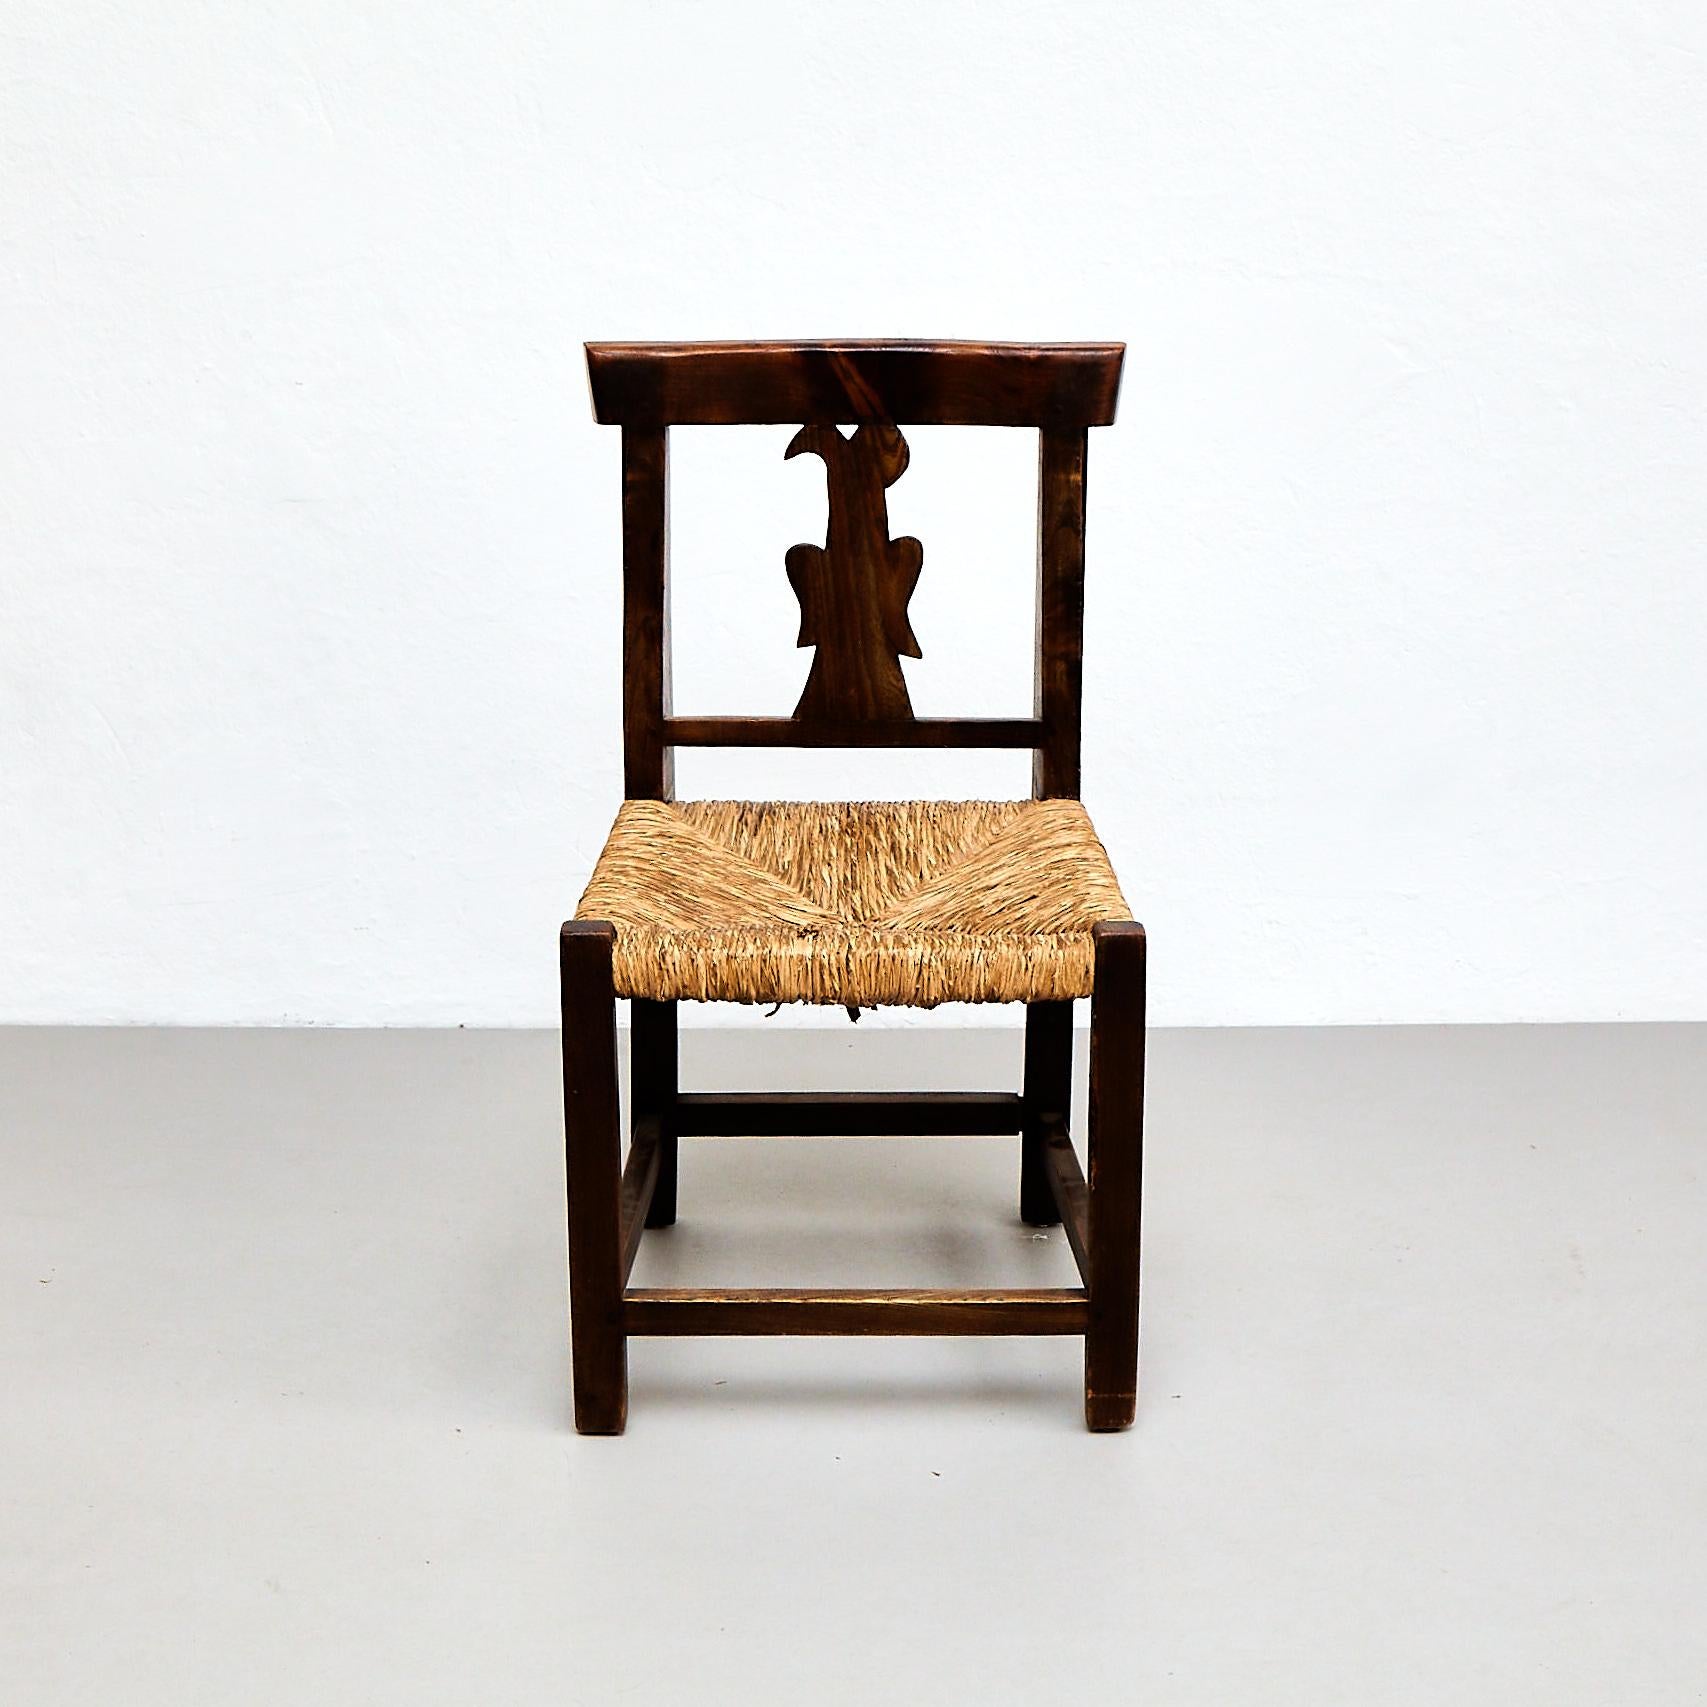 Dieses charmante Set aus vier rustikalen französischen Holzstühlen stammt aus der Zeit um 1950 und zeugt von der zeitlosen Eleganz des französischen Designs. Die Stühle sind aus hochwertigem Holz und Rattan gefertigt und befinden sich in ihrem